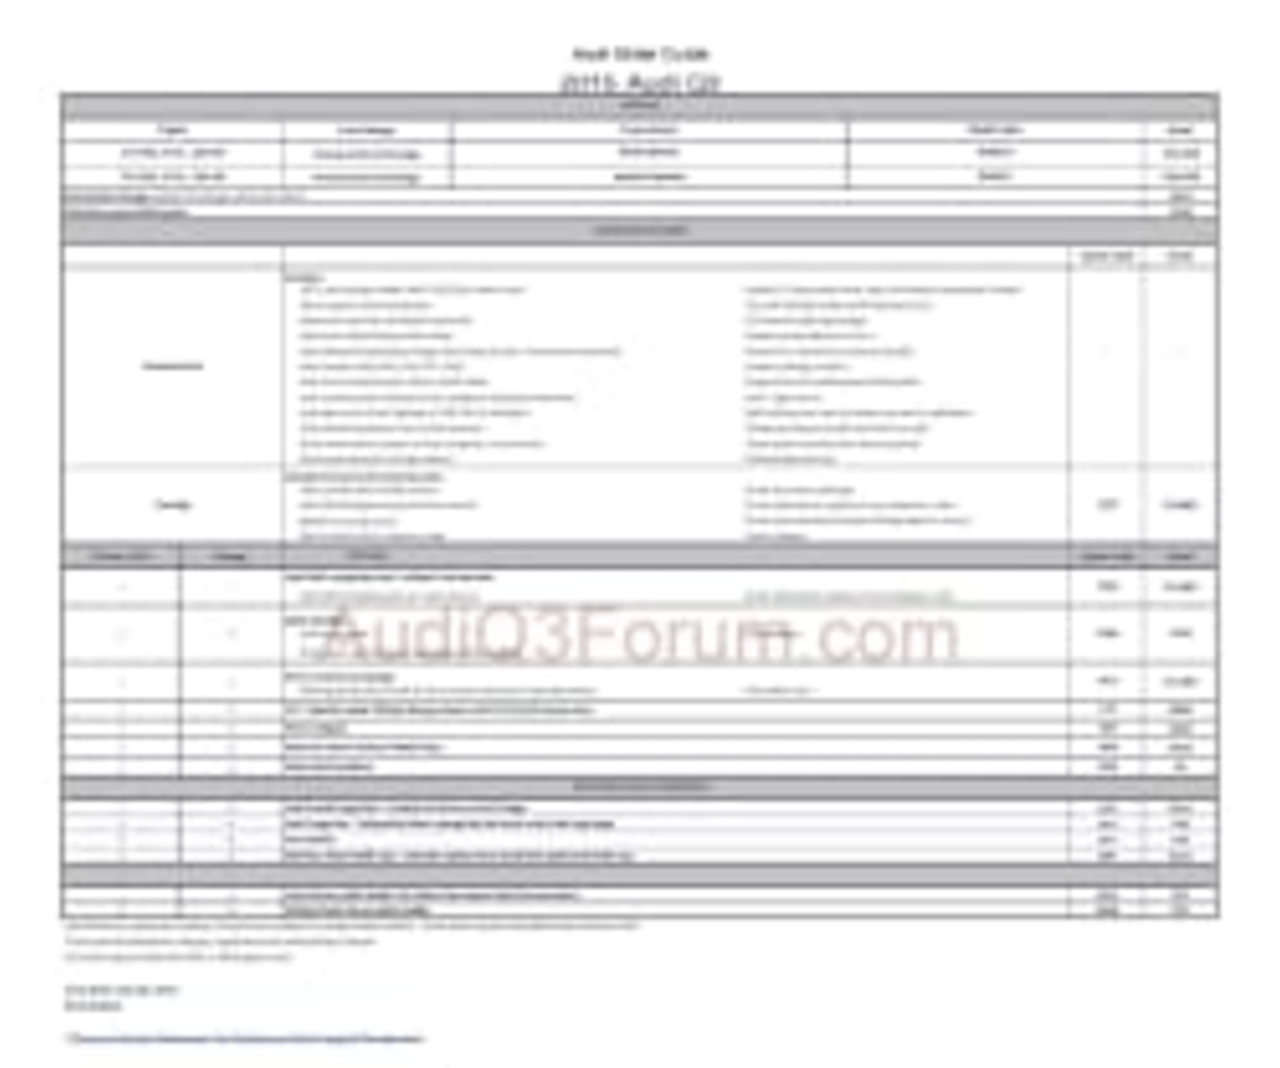 Audi Q3 Pricing leak